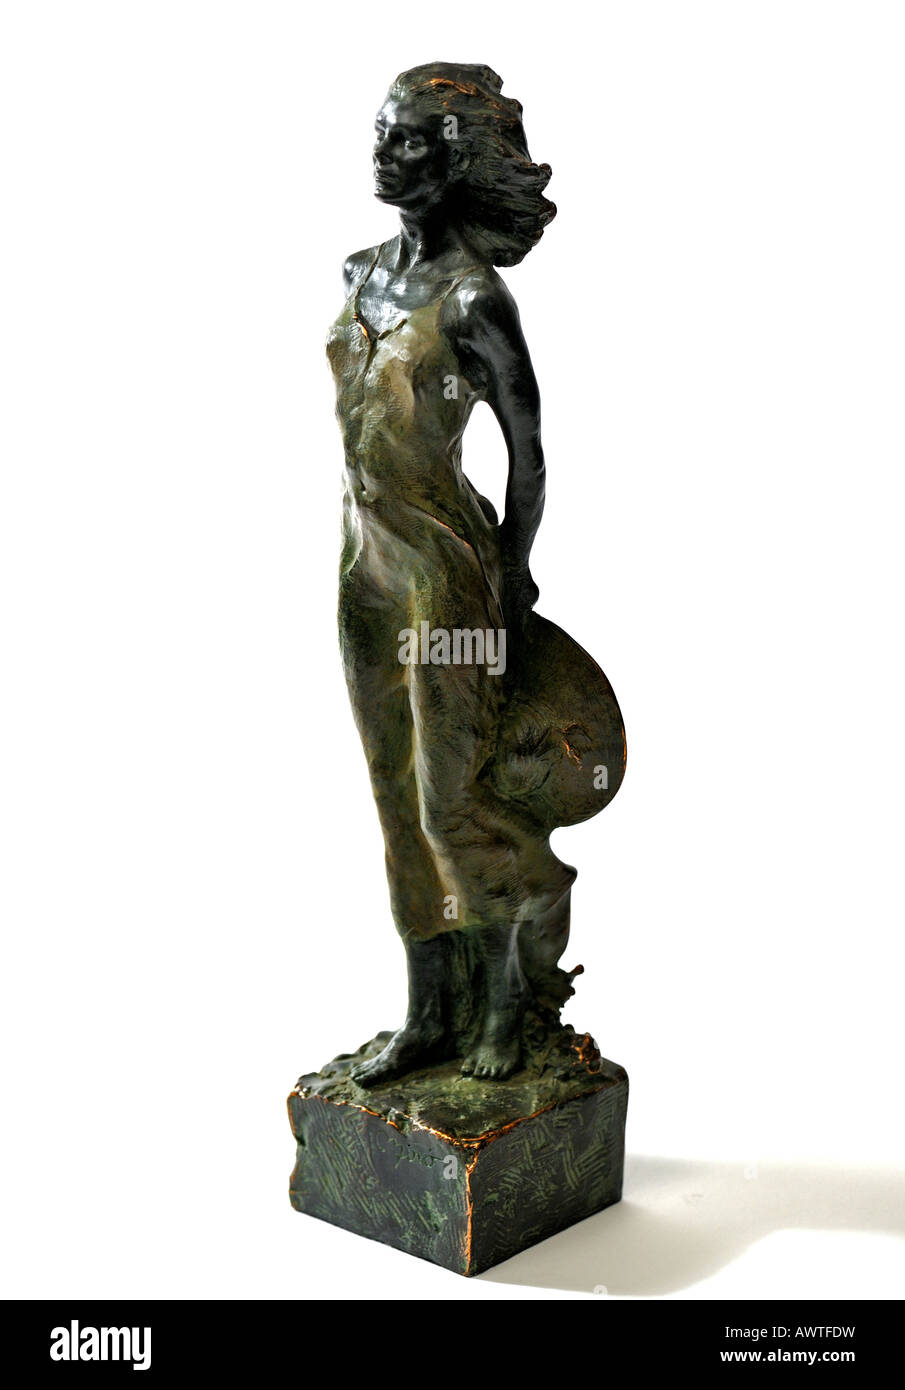 Escultura de bronce Estatuilla resina al viento por Miro escultor español de Barcelona España Edición Limitada Sólo para uso editorial Foto de stock